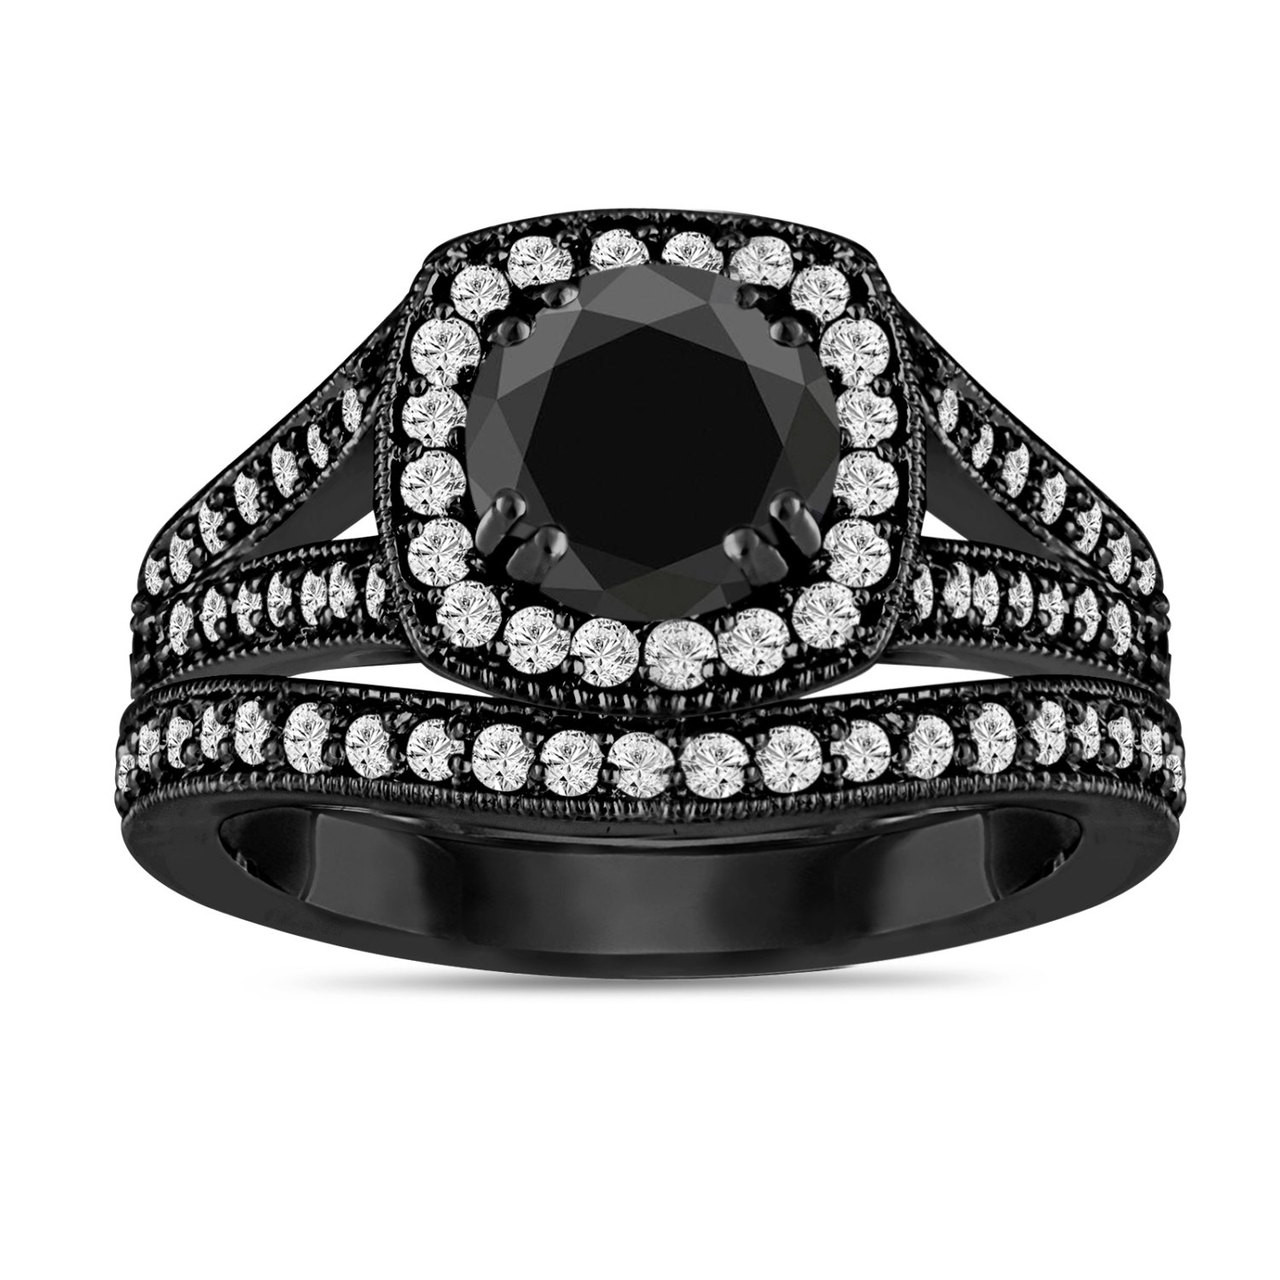 Black Diamond Engagement Ring Set, Vintage Wedding Rings